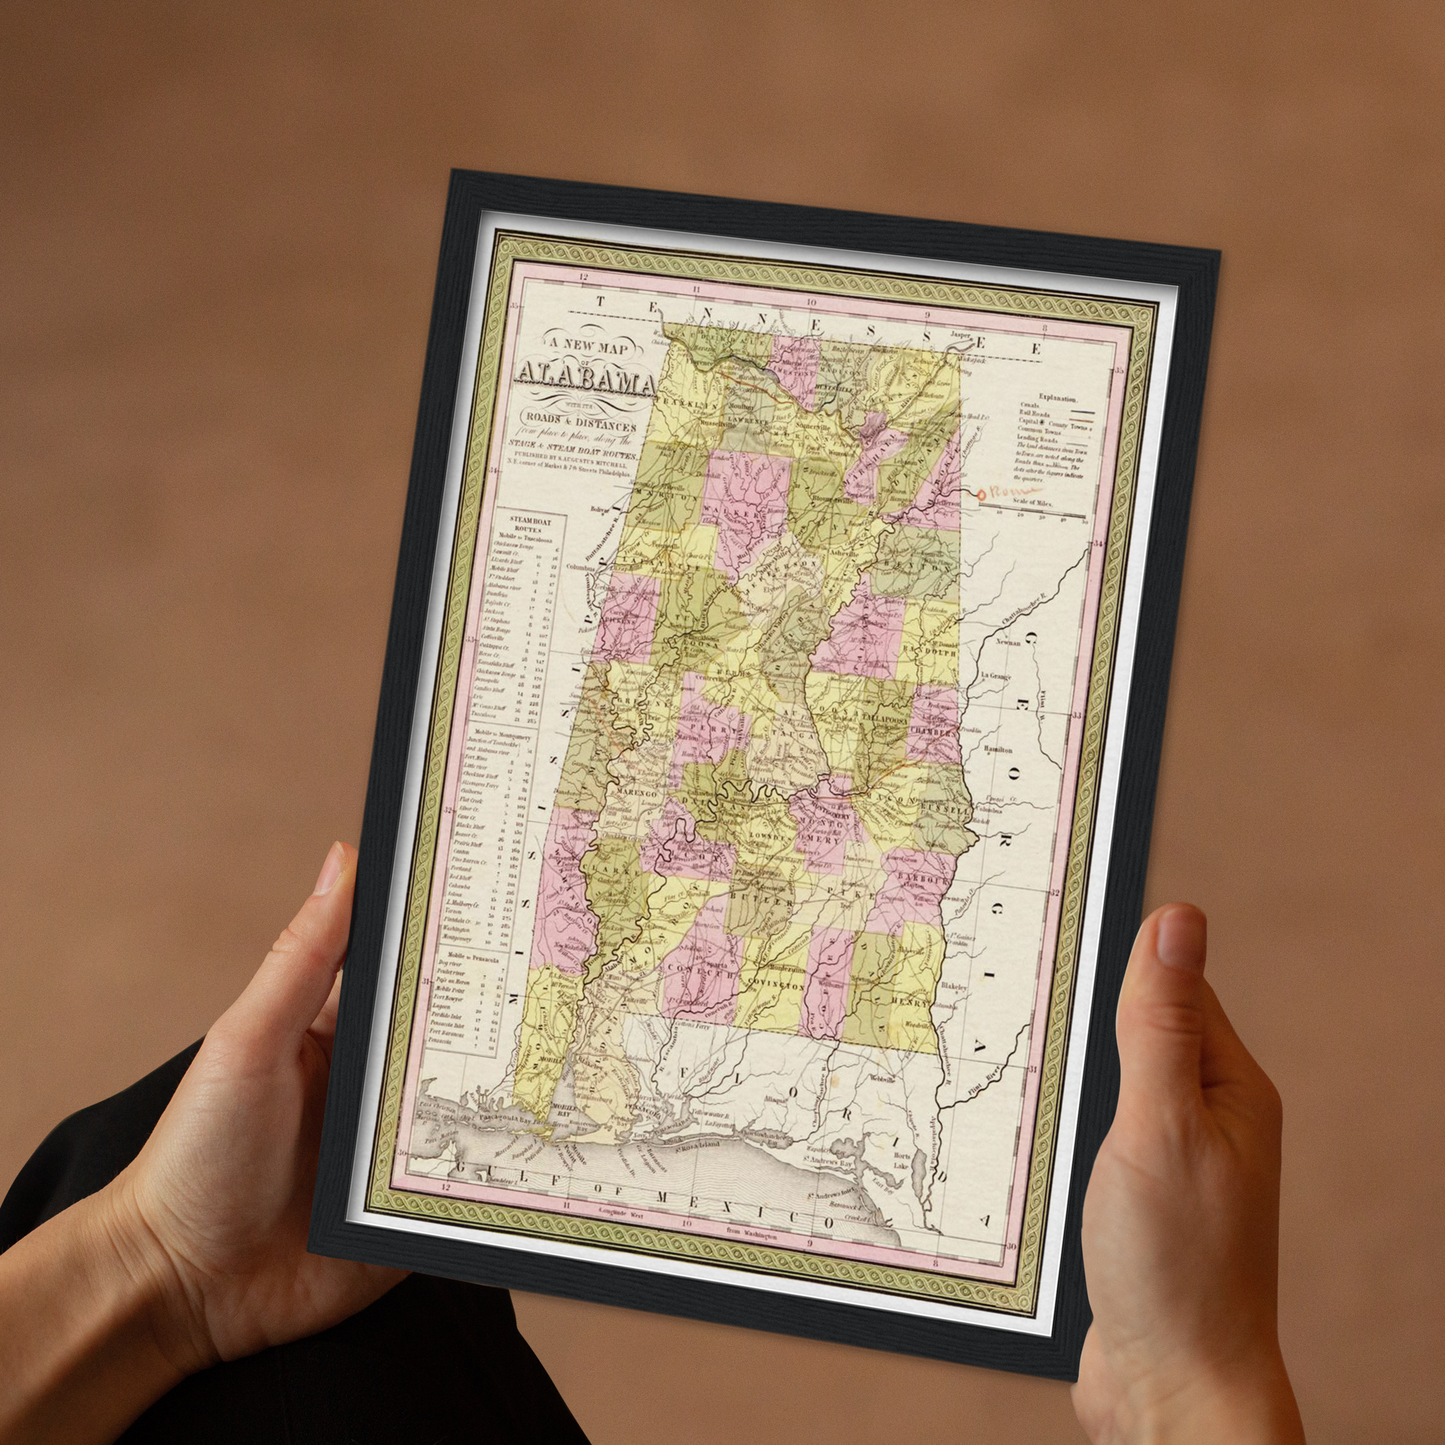 Historische Landkarte Alabama um 1849